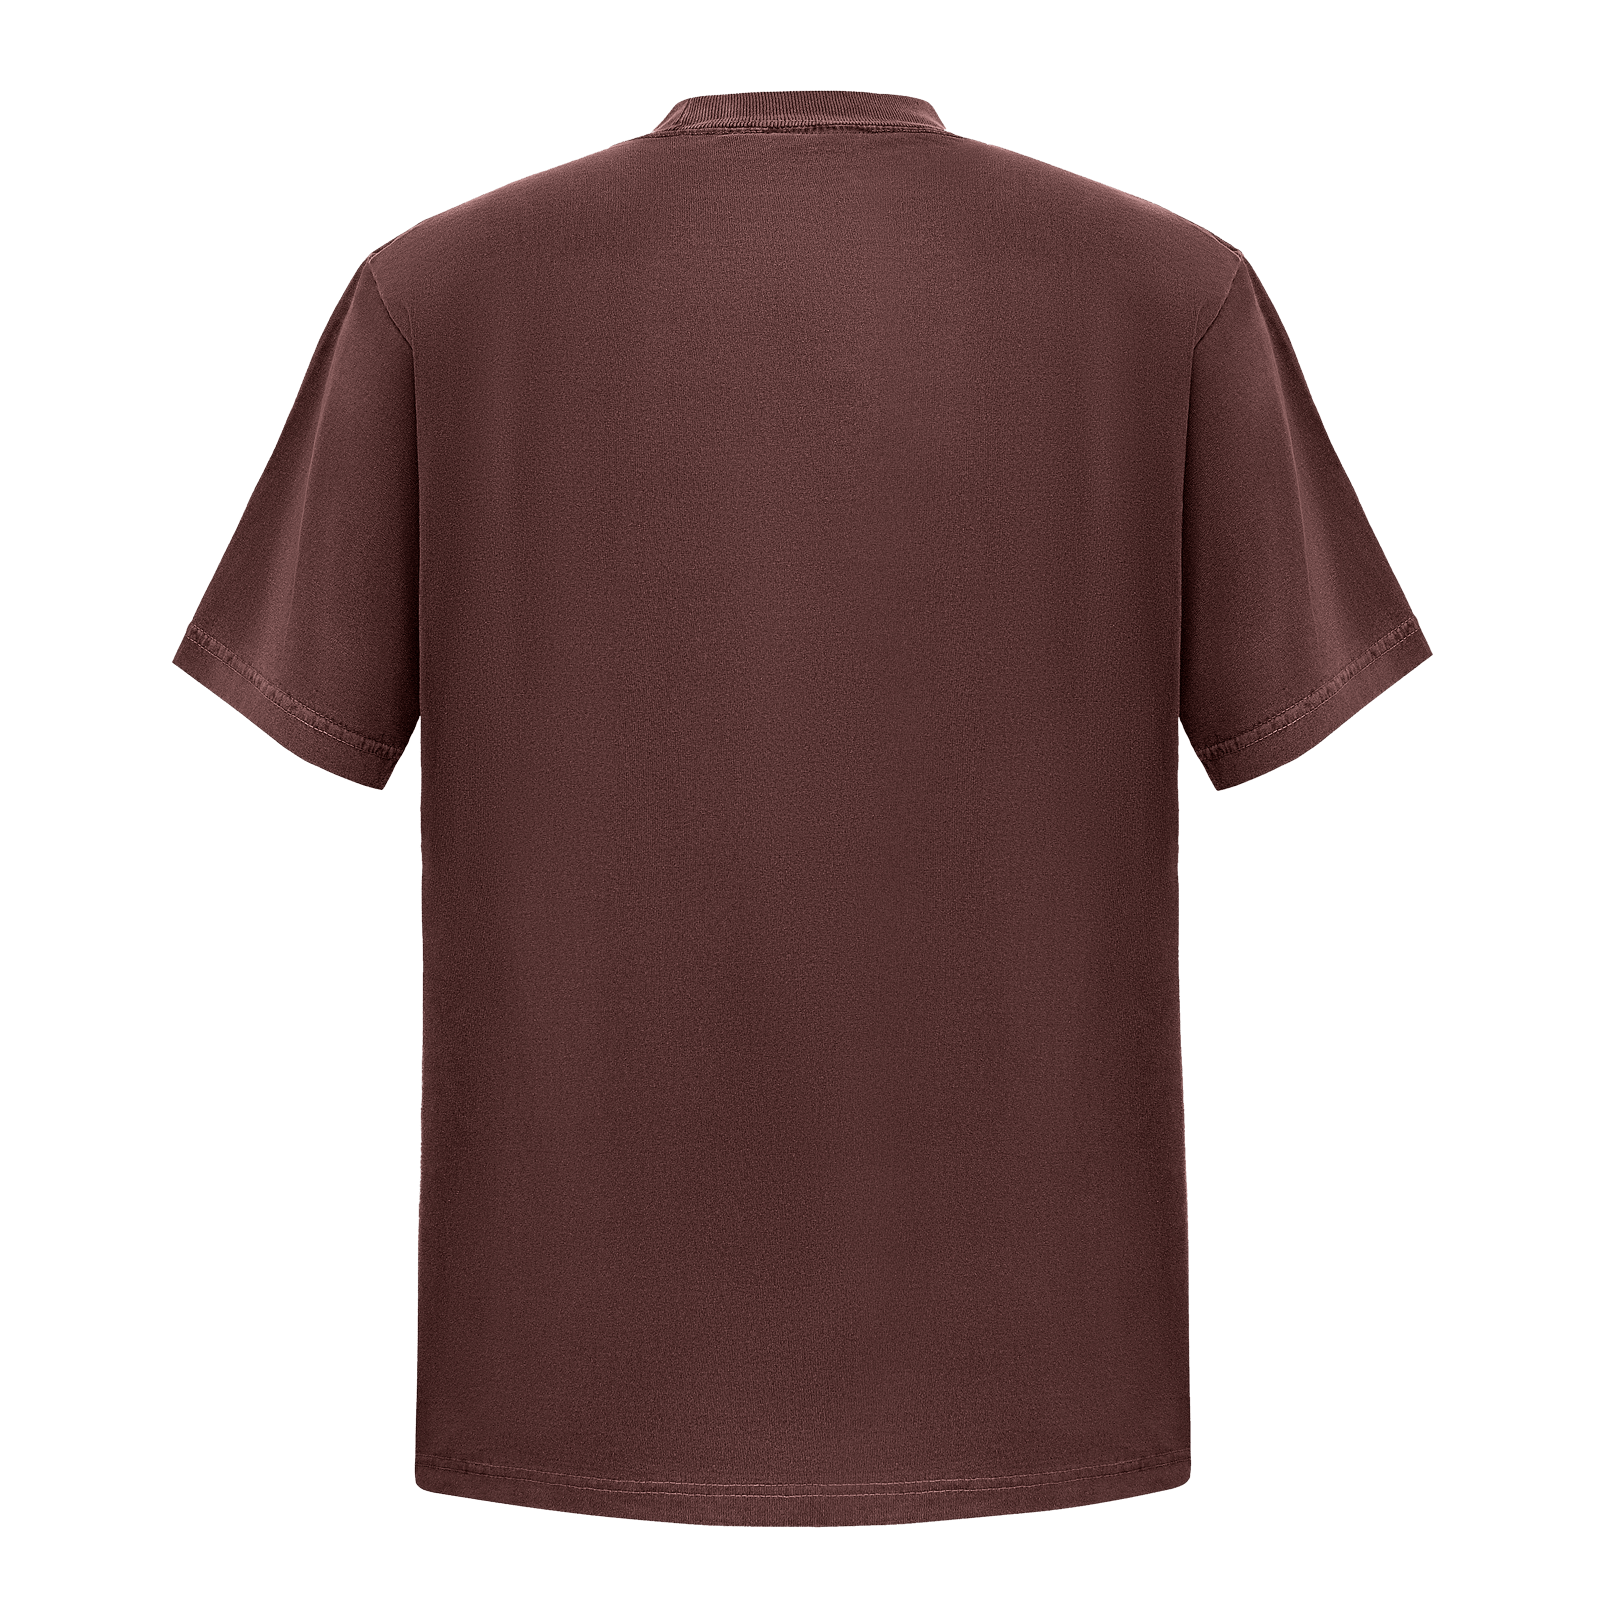 Garment Dye T-Shirt - Standard Size - Mocha